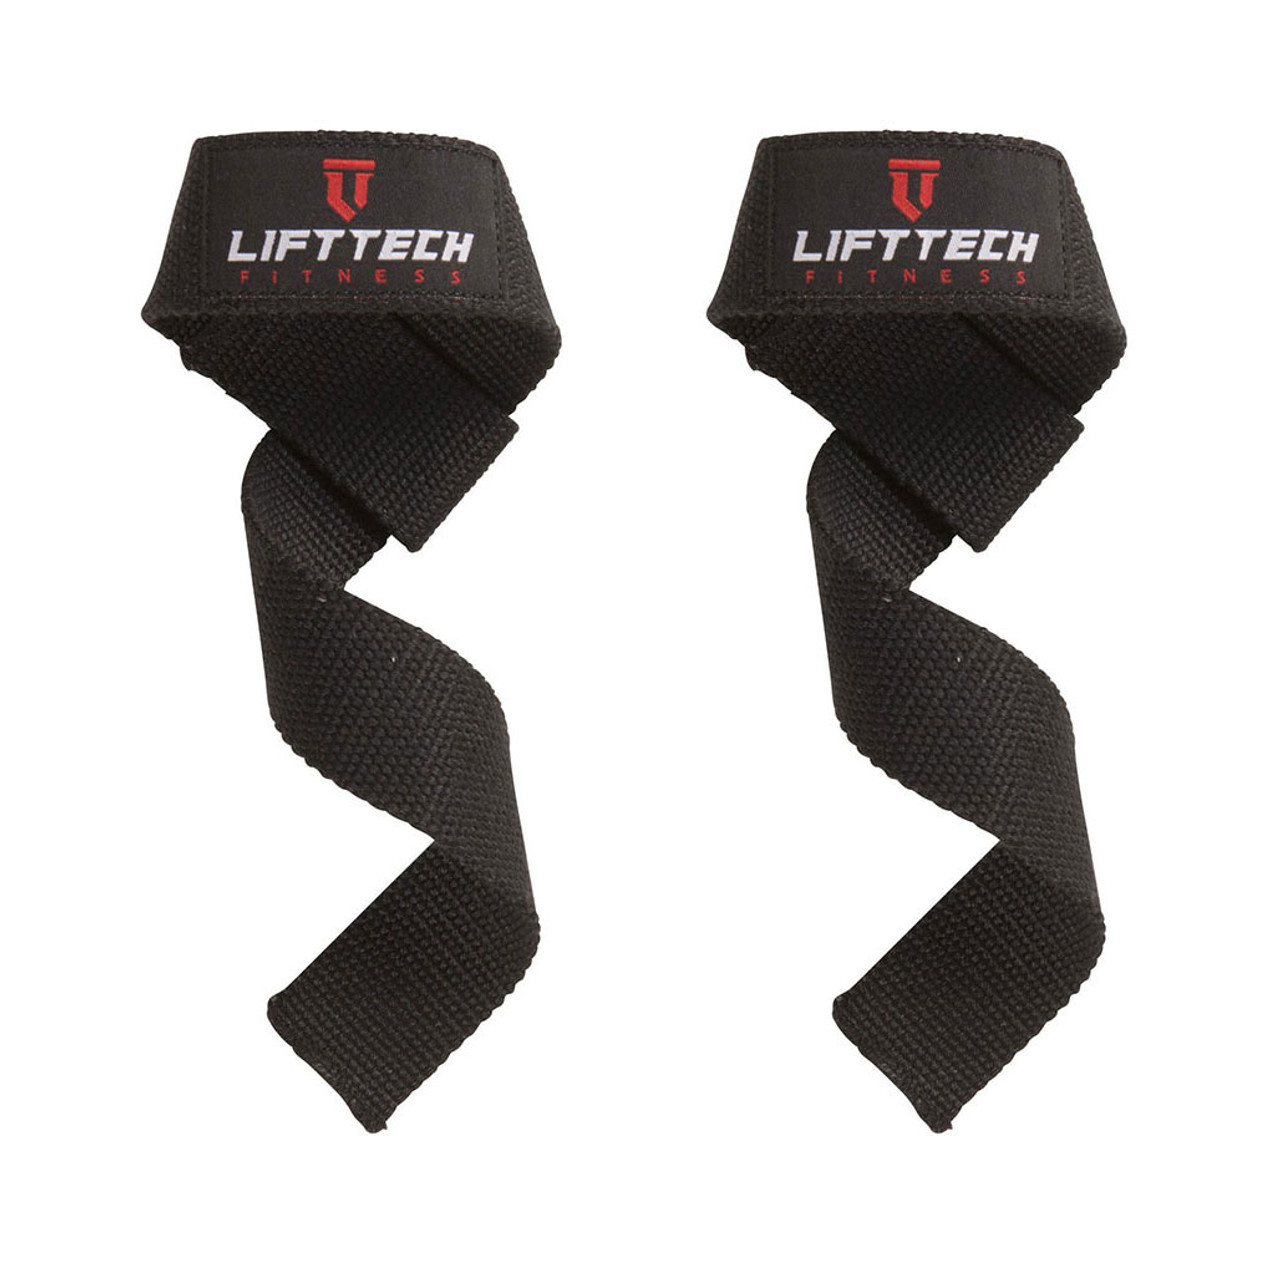 COTTON LIFTING STRAPS – Lift Tech Fitness